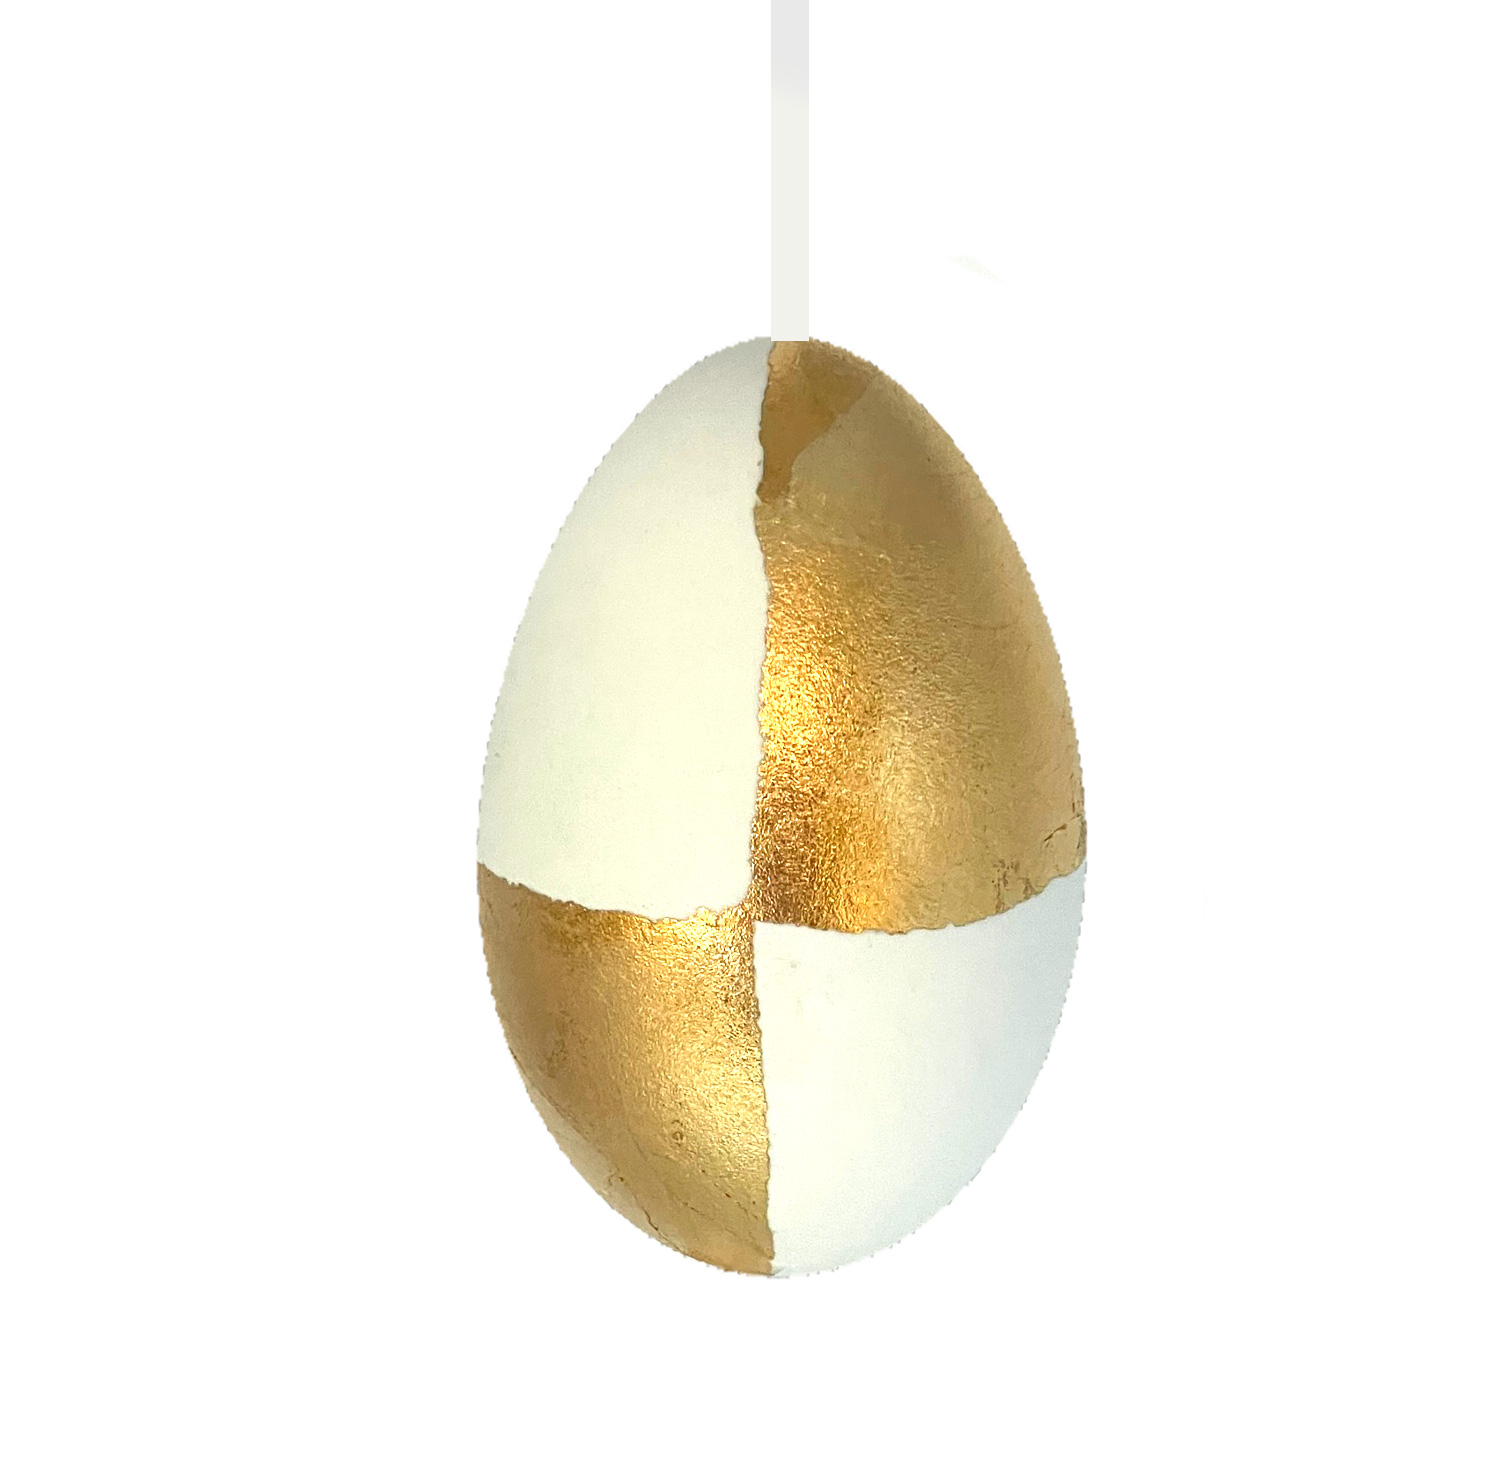 Osterei Gold-weiß, Gänseei, 1/4 Handwerkskunst aus der Slowakei, jedes Ei ist ein Unikat   